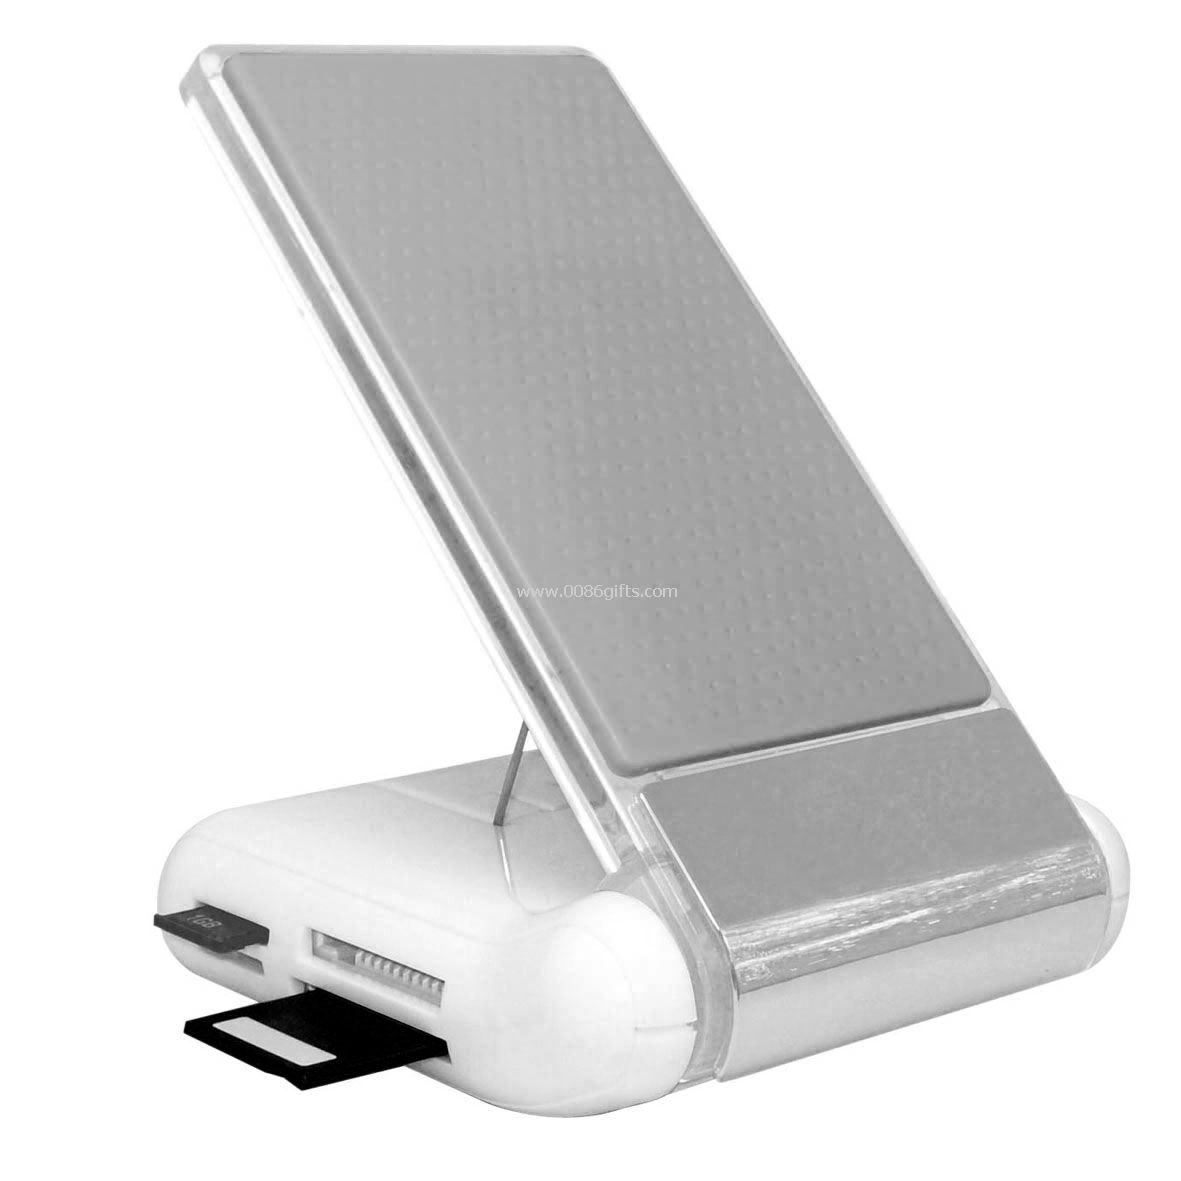 Hub USB Mobile pemegang kartu pembaca